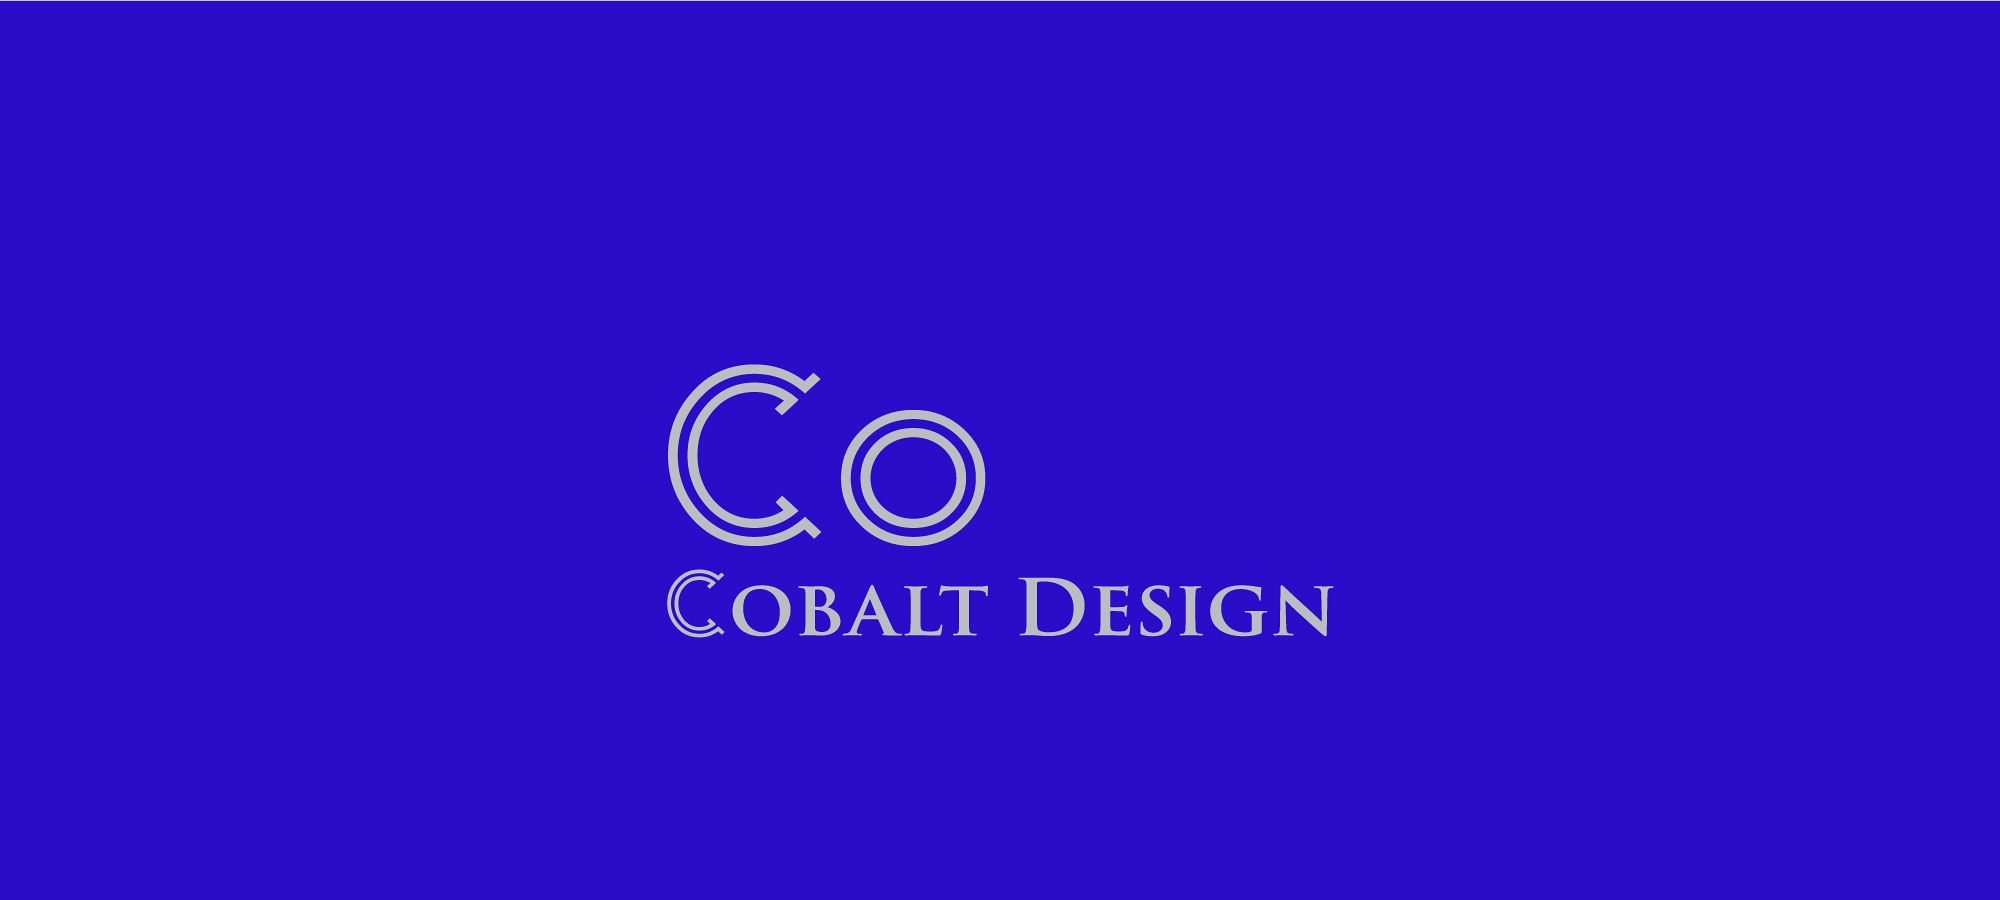 Why We Chose the Name Cobalt Design